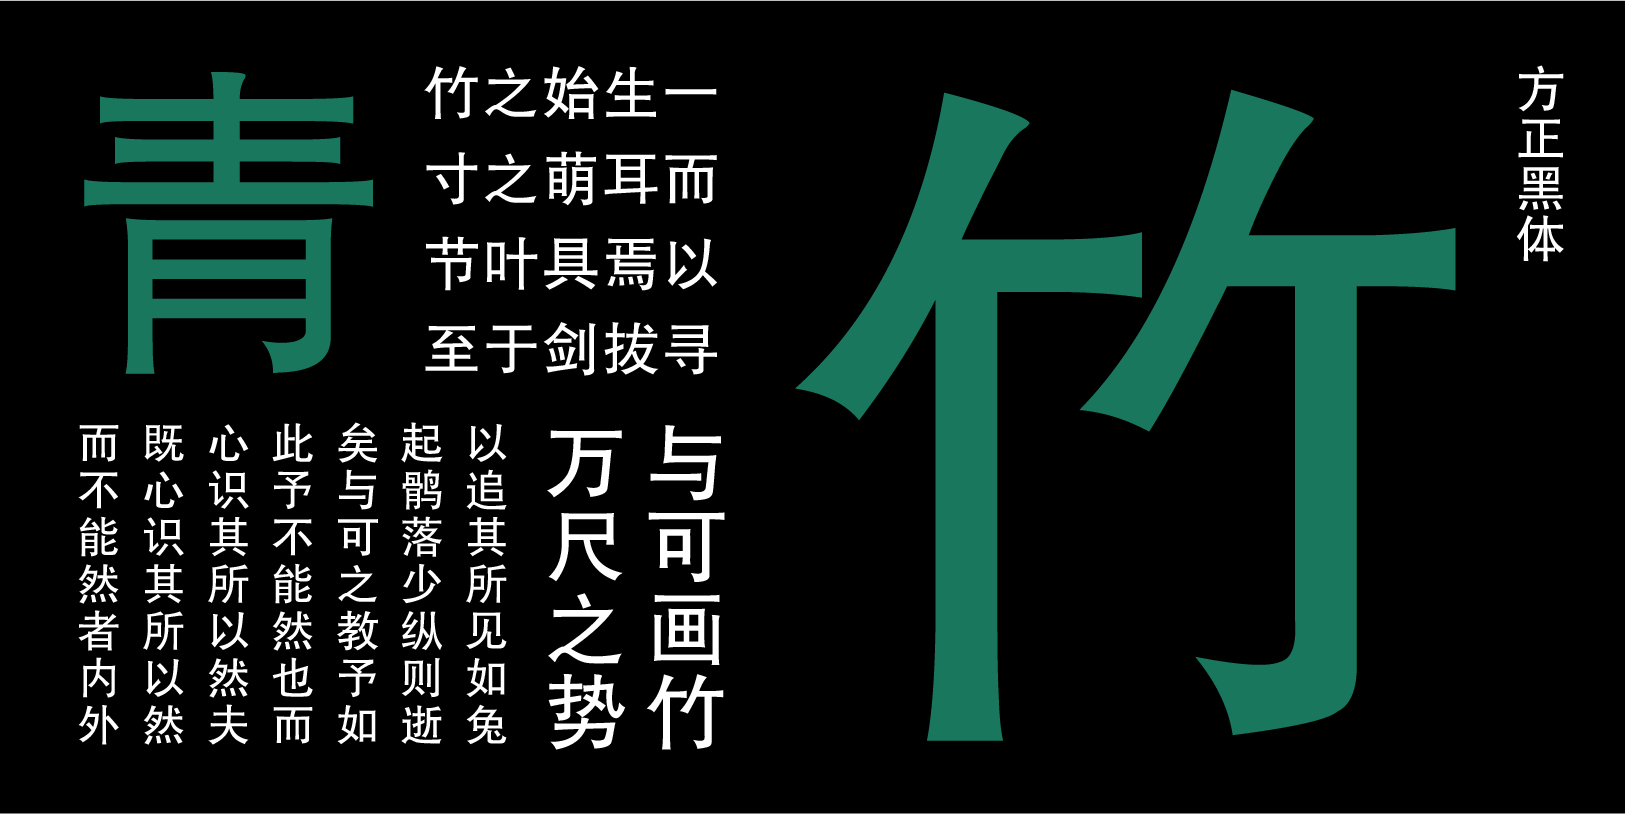 Card displaying Fāng Zhèng Hēi Tǐ typeface in various styles